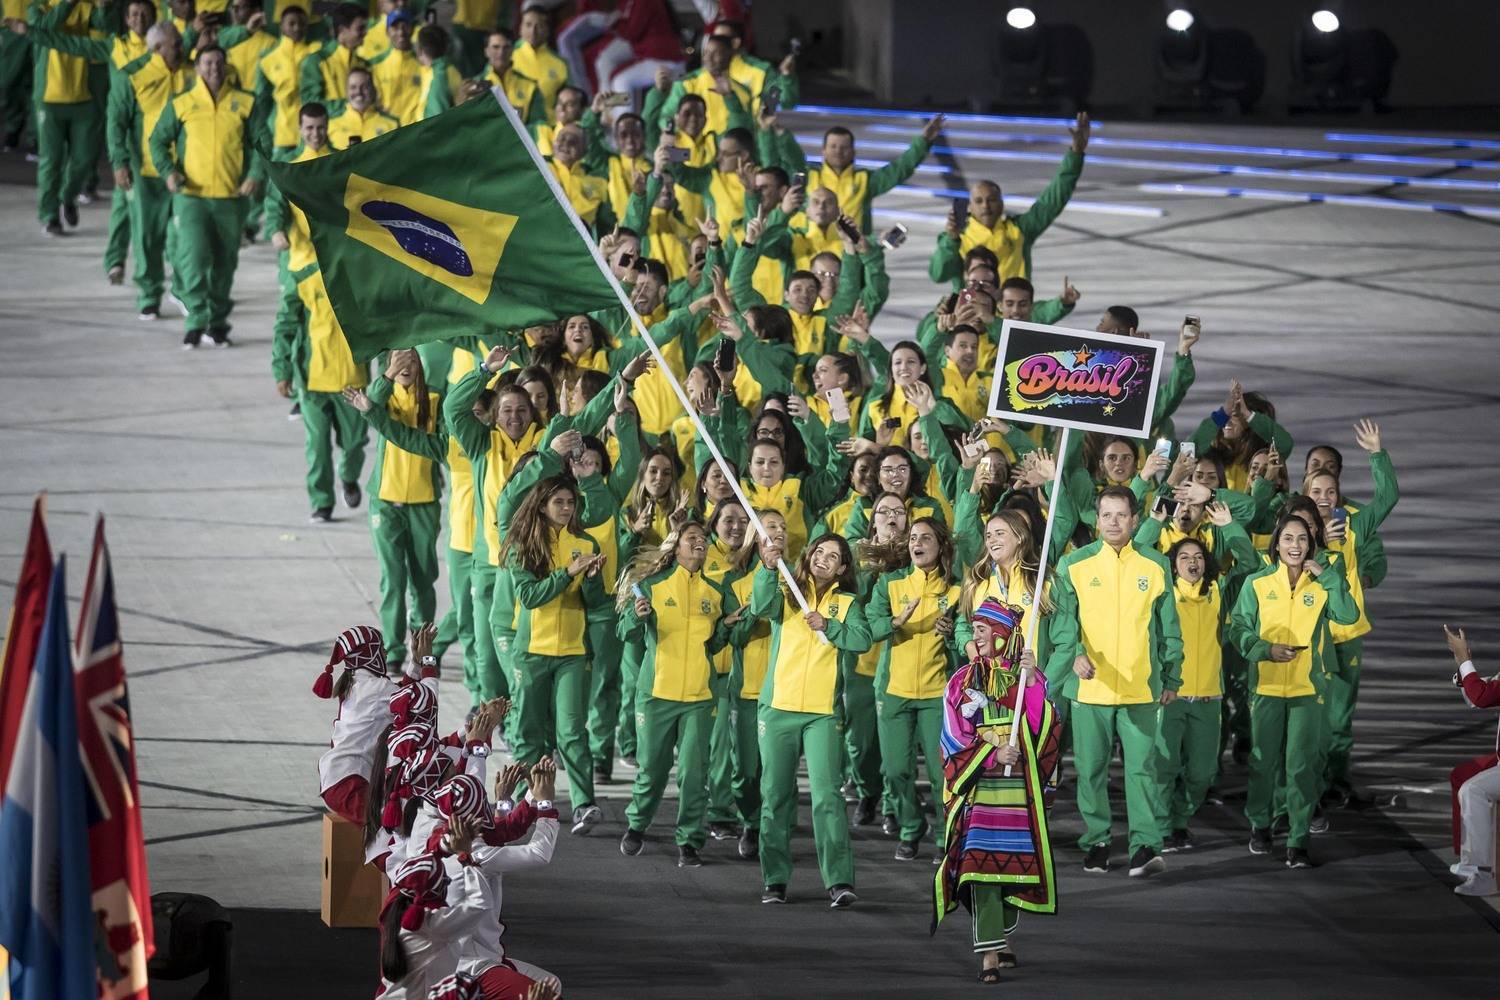 Por que o futebol brasileiro não está nos Jogos Pan-Americanos? - RecordTV  - R7 Pan Lima 2019